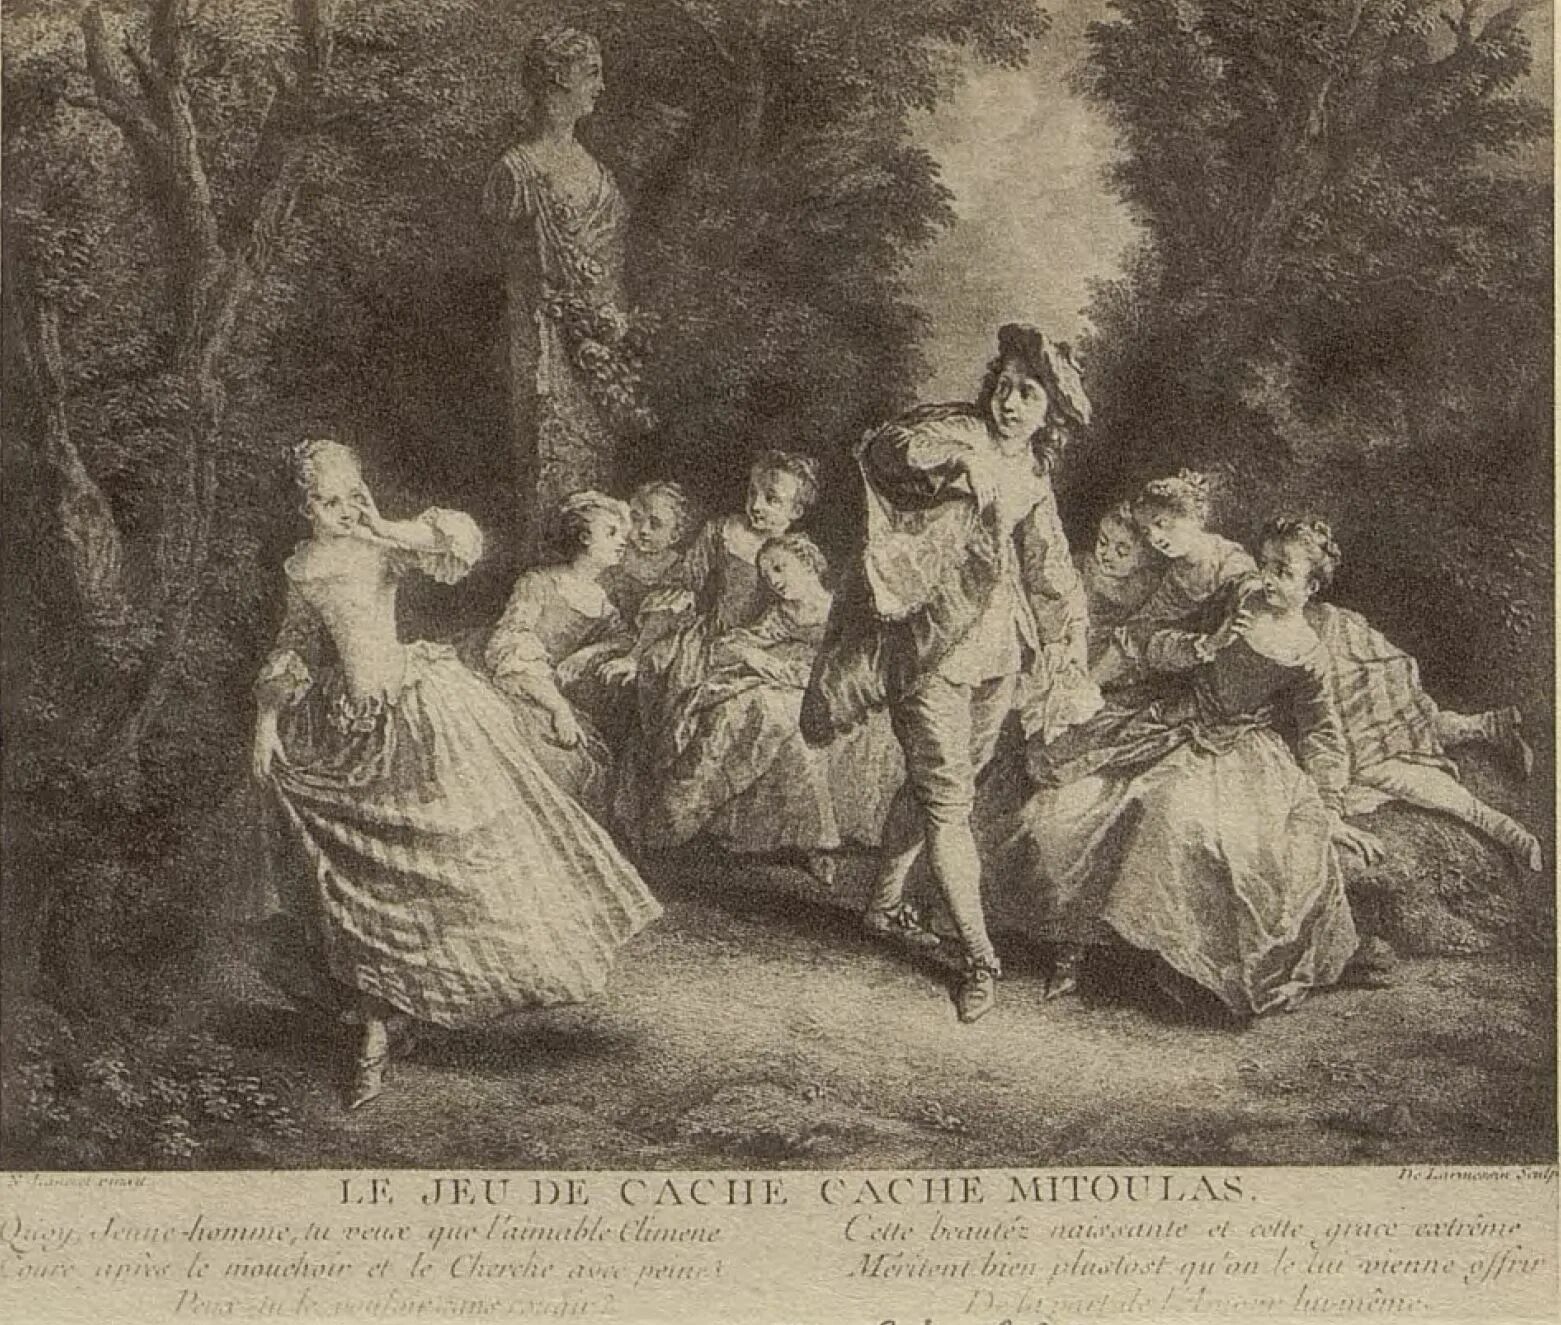 Гравюры знатных людей 18 века. Французская гравюра 18 века. Жизнь знатных людей 18 века в картинах и гравюрах.